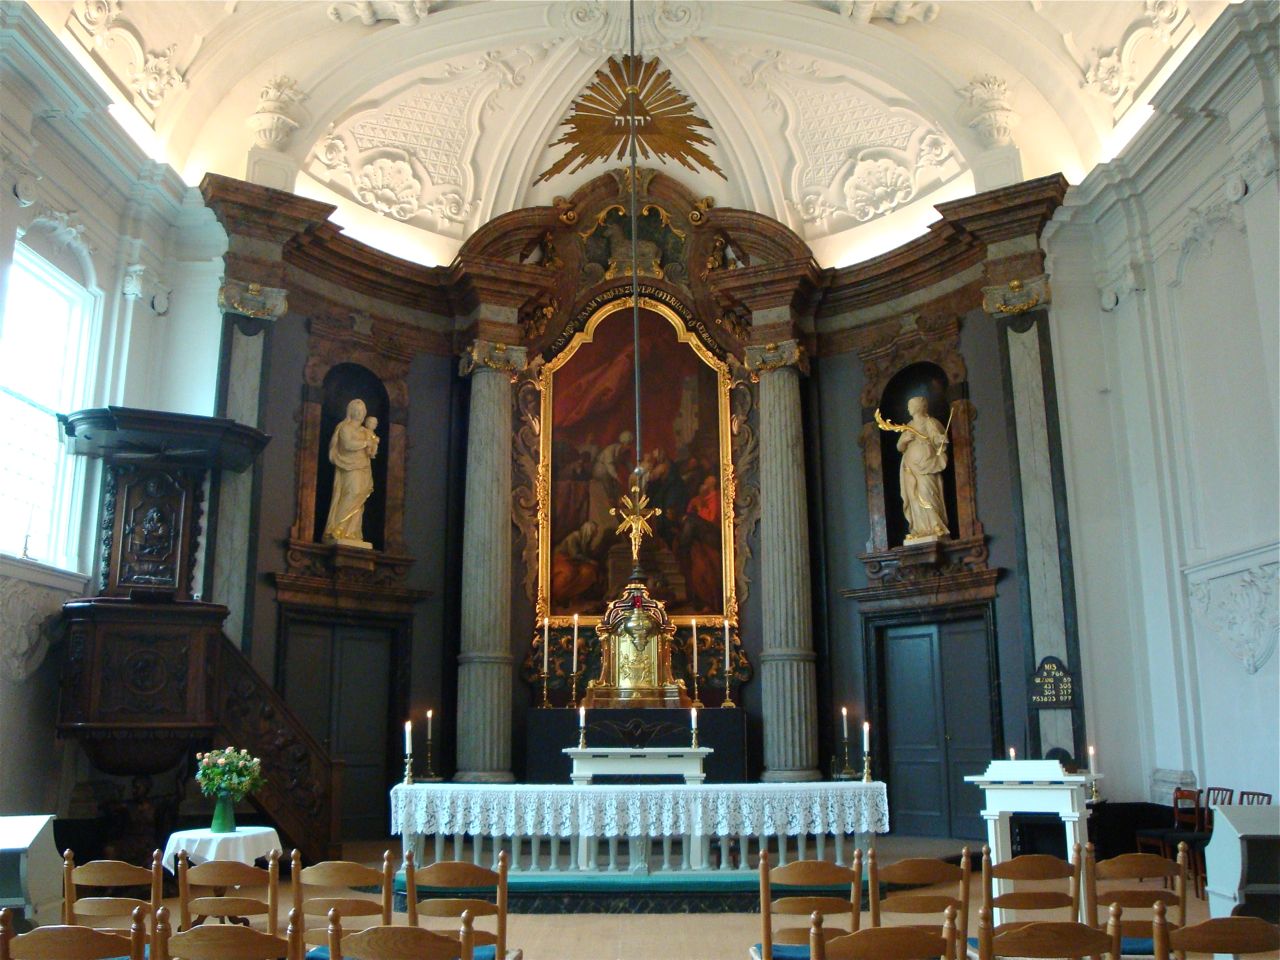 Interieur van de oud-katholieke schuilkerk Delft